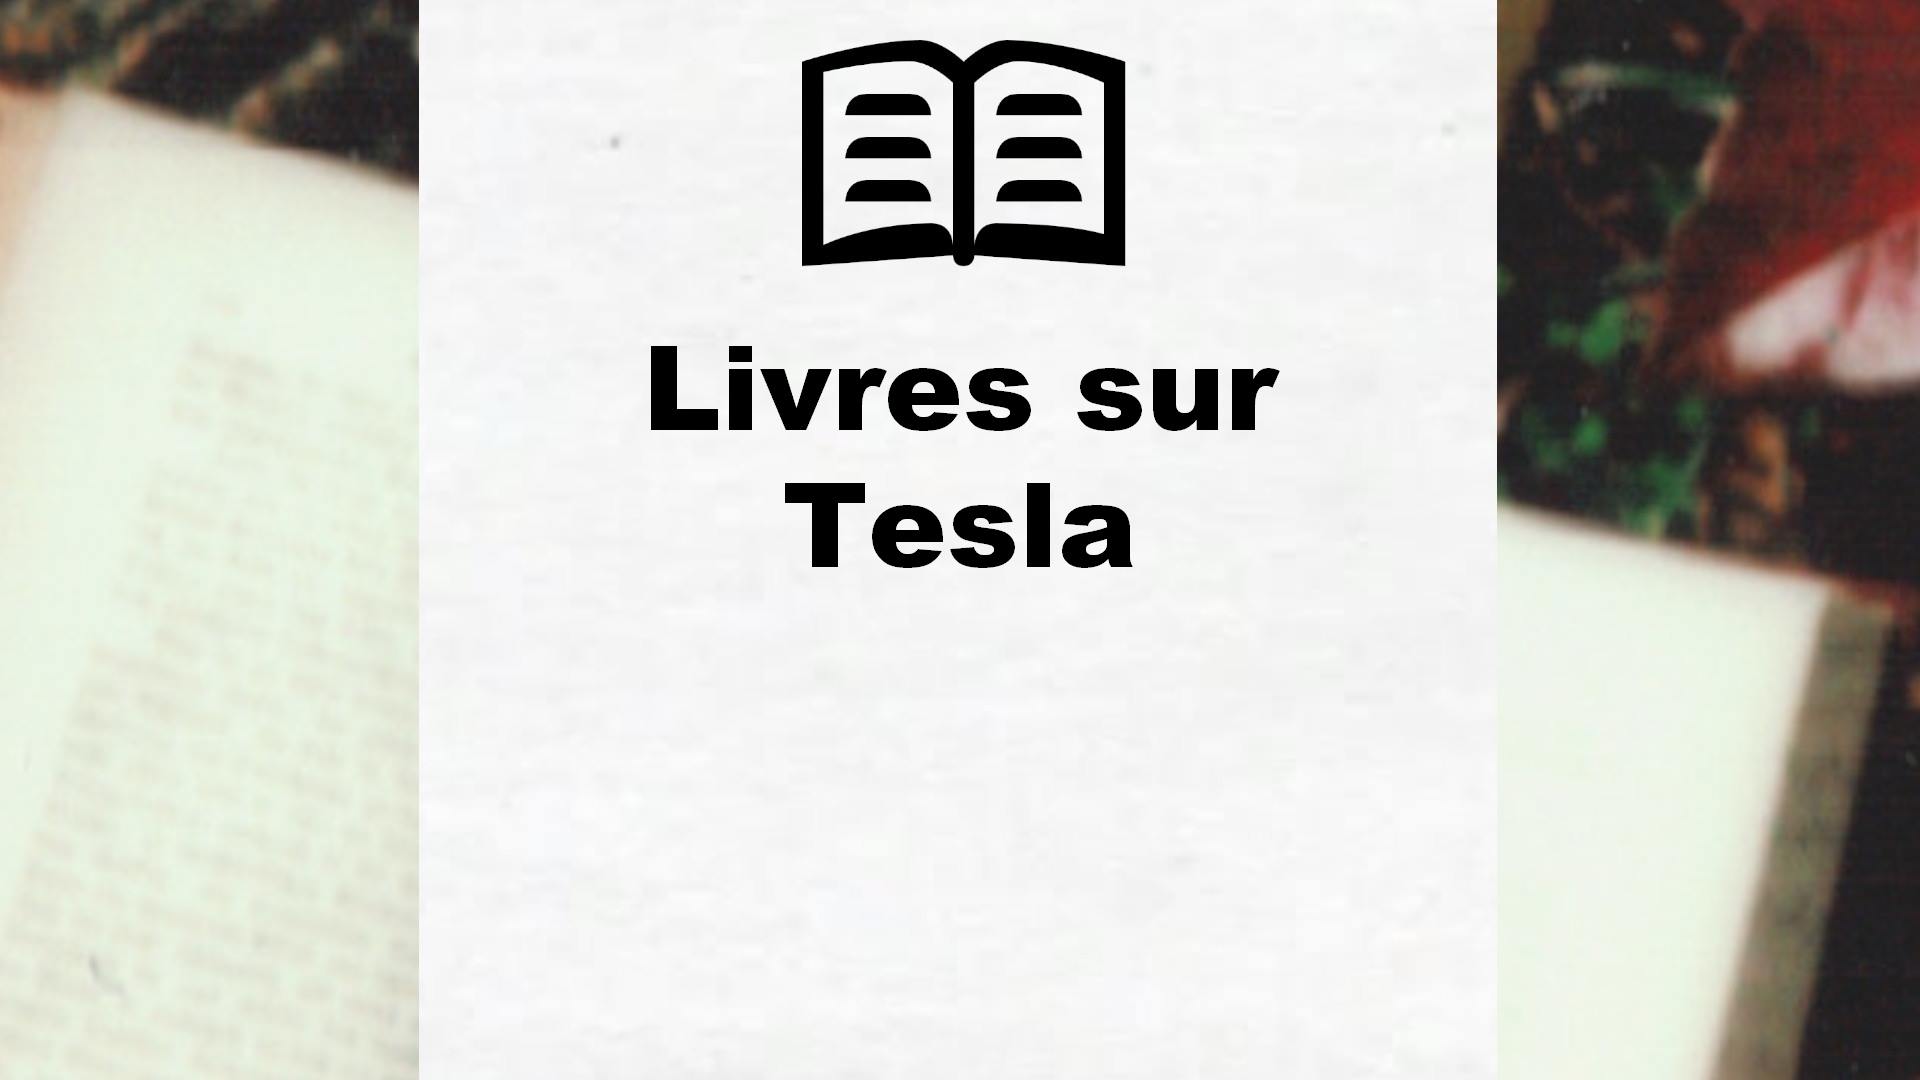 Livres sur Tesla